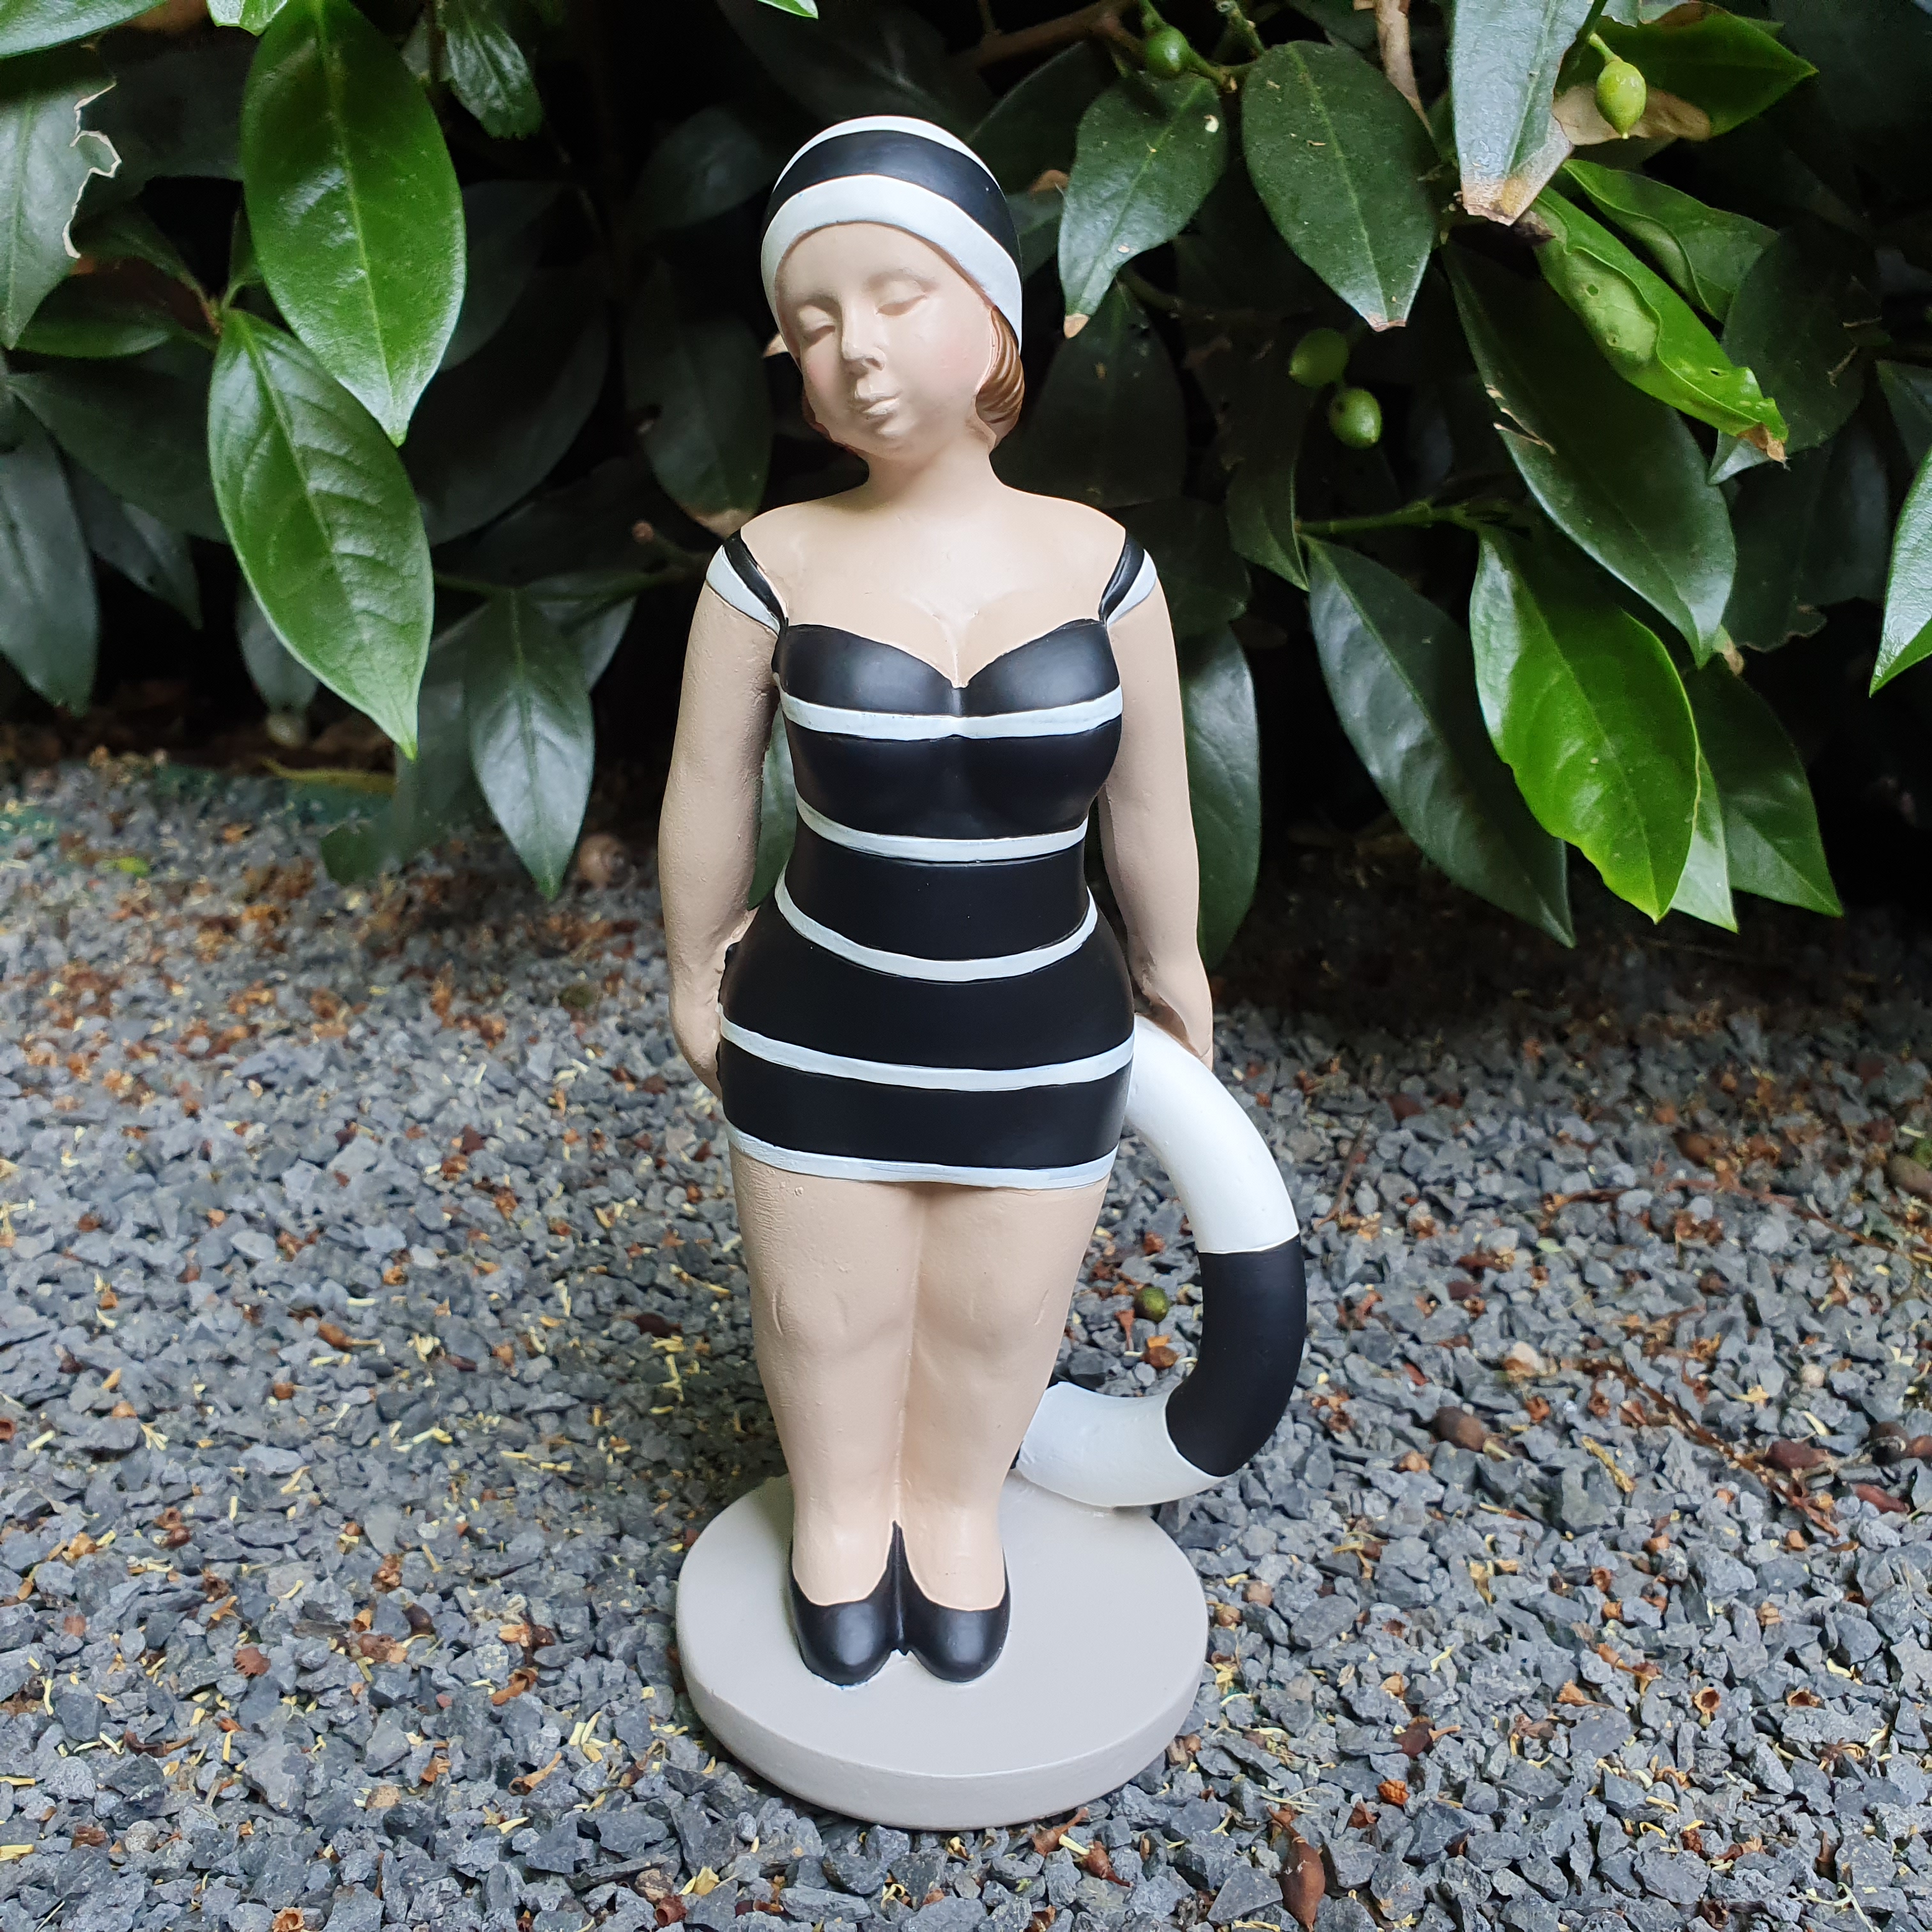 Gartenfigur stehende Badenixe Figur mit Rettungsring 21 cm schwarz